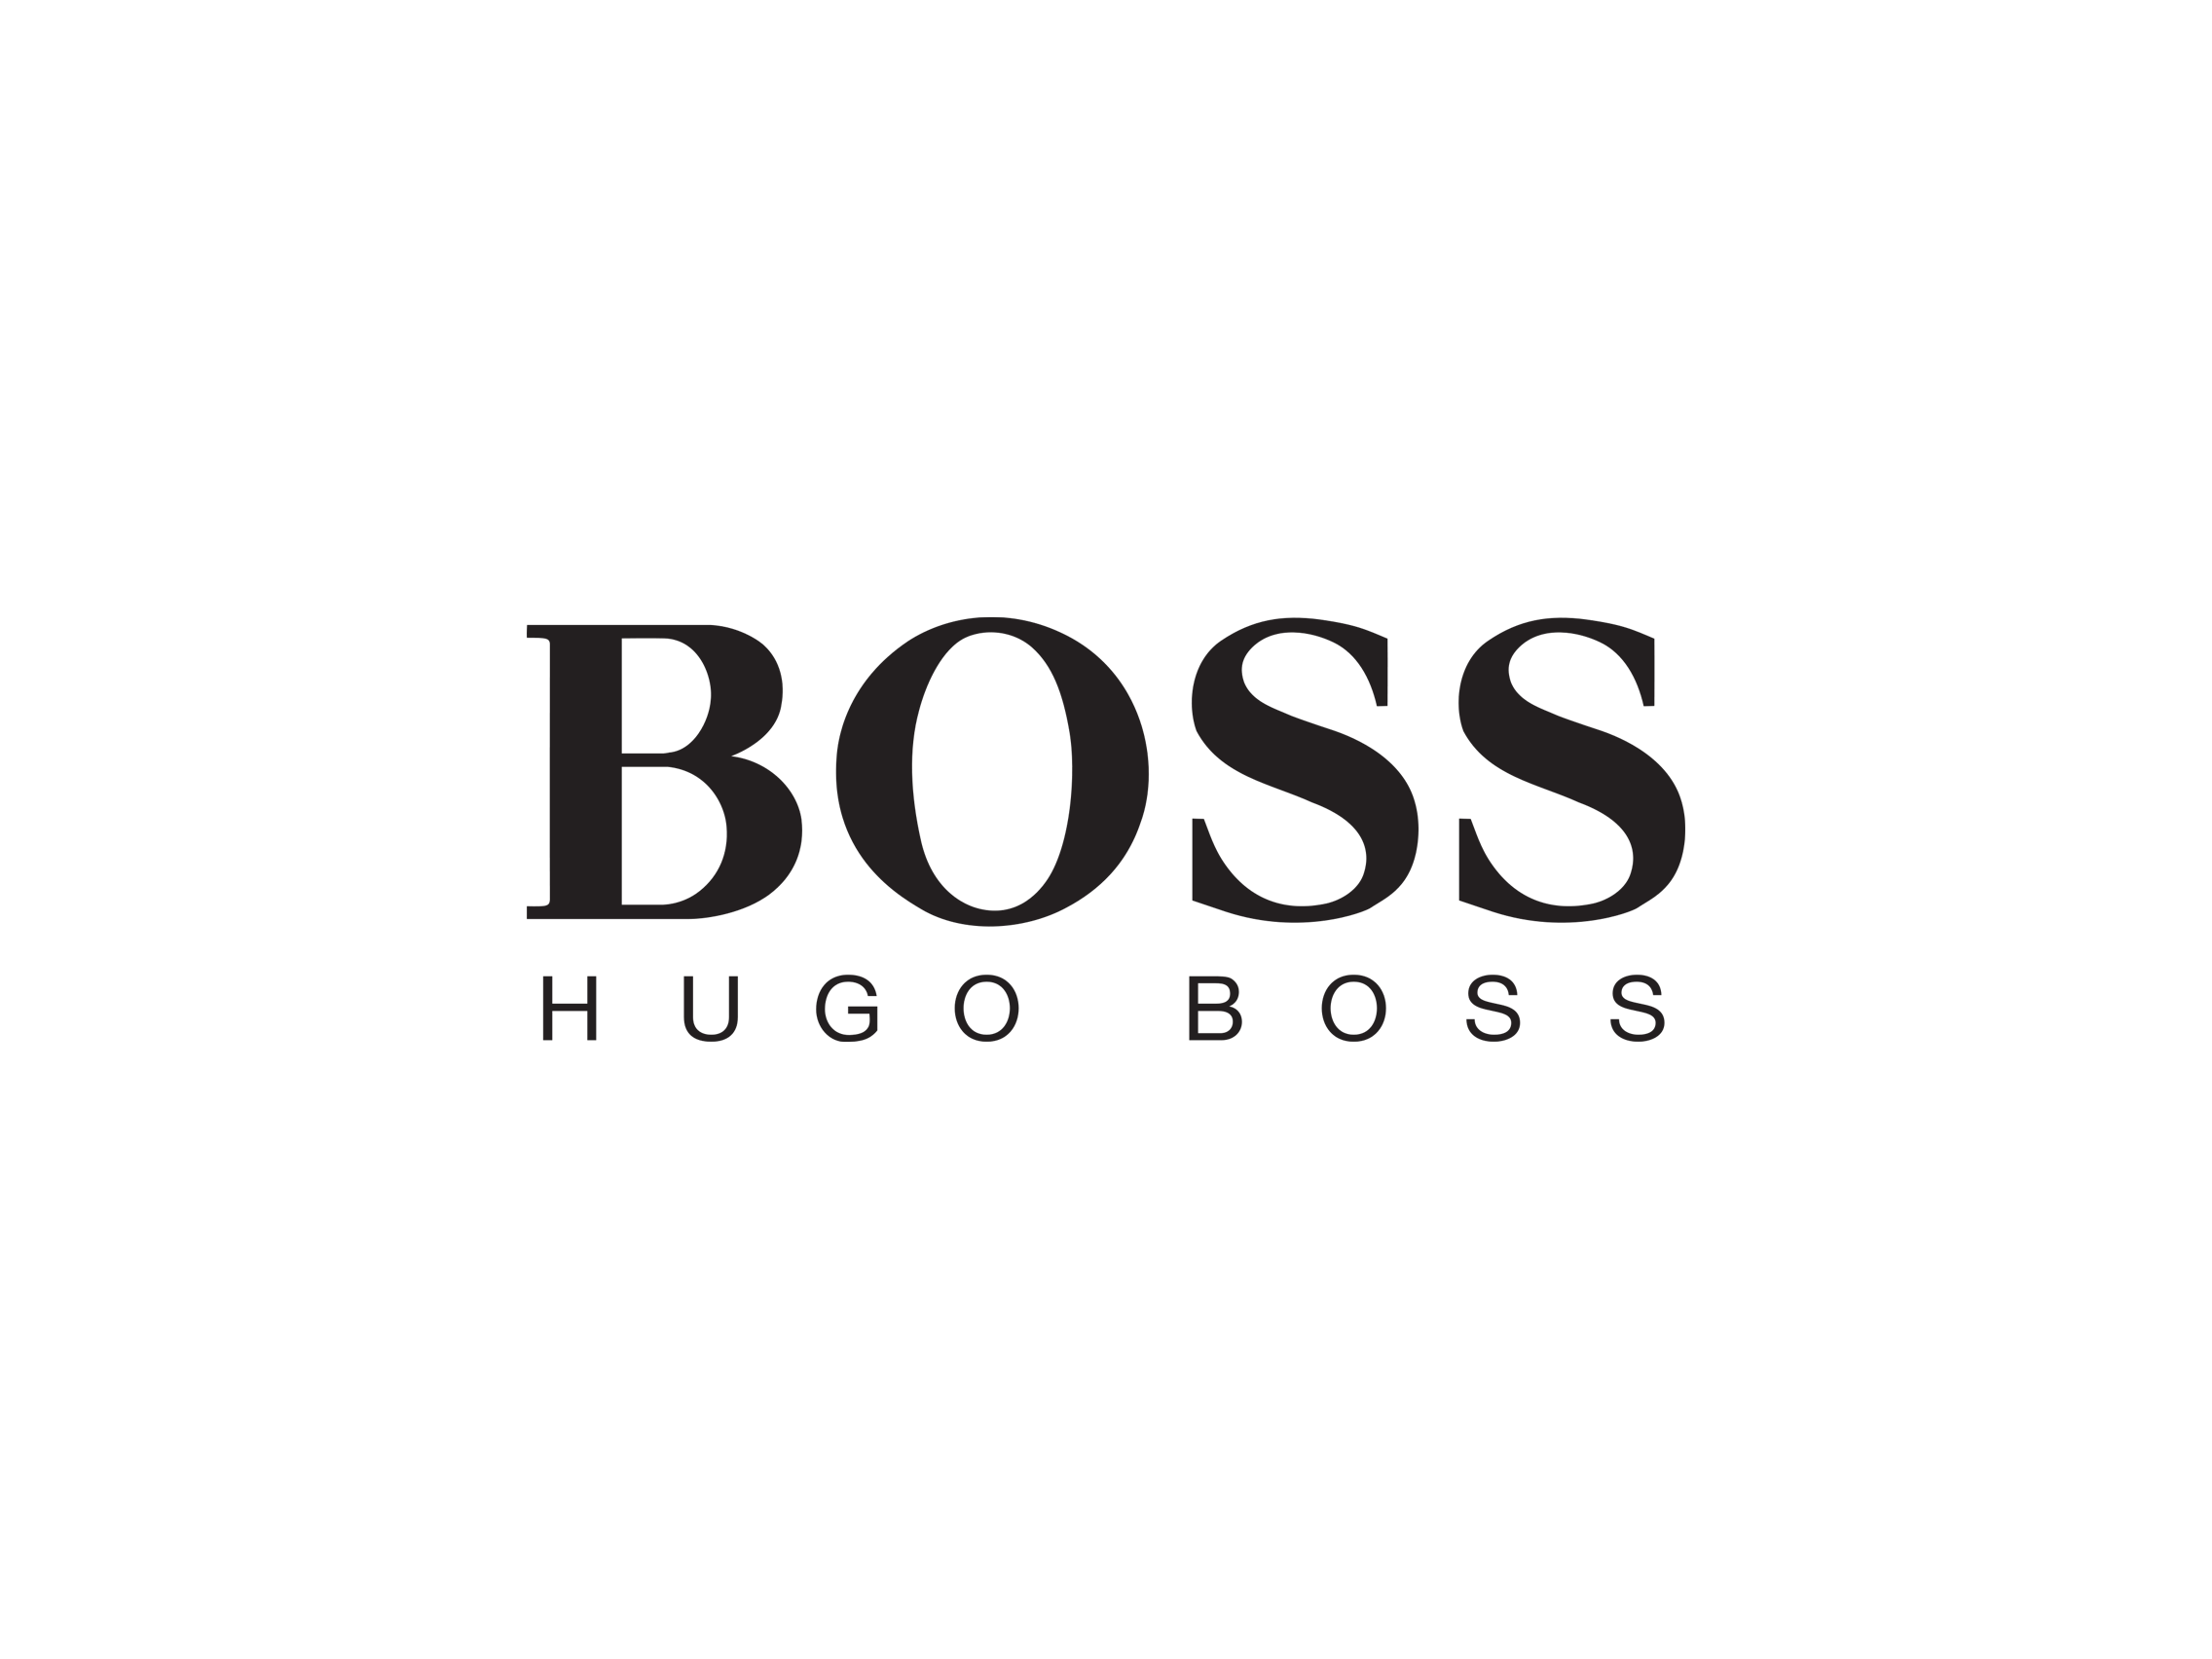 Хуга босс. Хьюго босс лого. Хьюго босс мужские духи логотип. Хьюго босс надпись. Хьюго босс бренды Хьюго и босс.